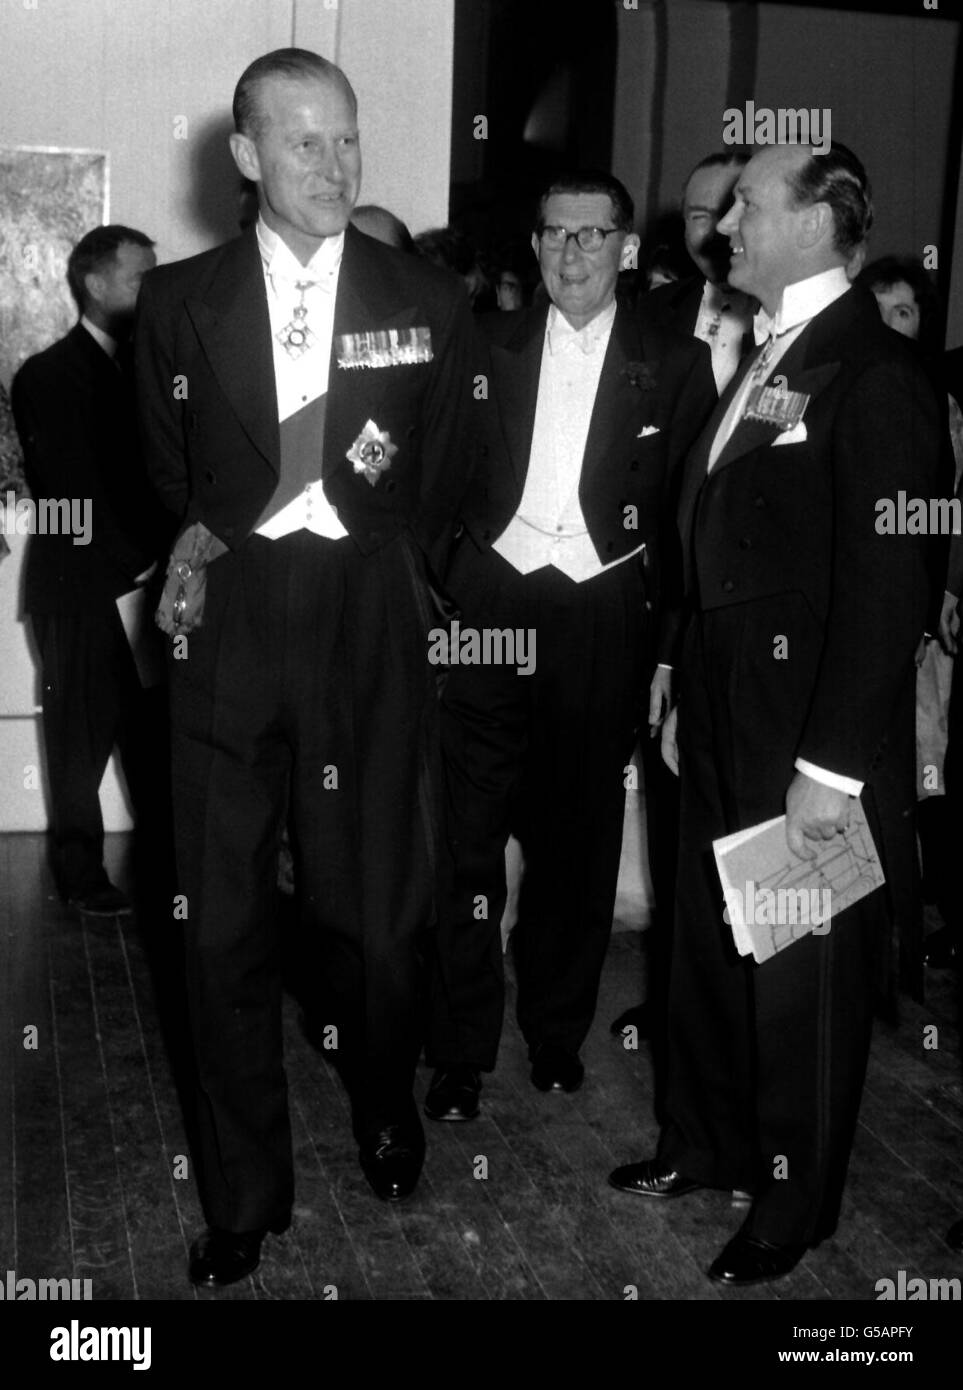 Il Duca di Edimburgo (a sinistra) è visto in un gruppo sorridente, tra cui il suo amico ed ex segretario privato, il Lieutenente-comandante Michael Parker (a destra), mentre ha girato la Tate Gallery di Londra, per una mostra retrospettiva di opere di Pablo Picasso. Foto Stock